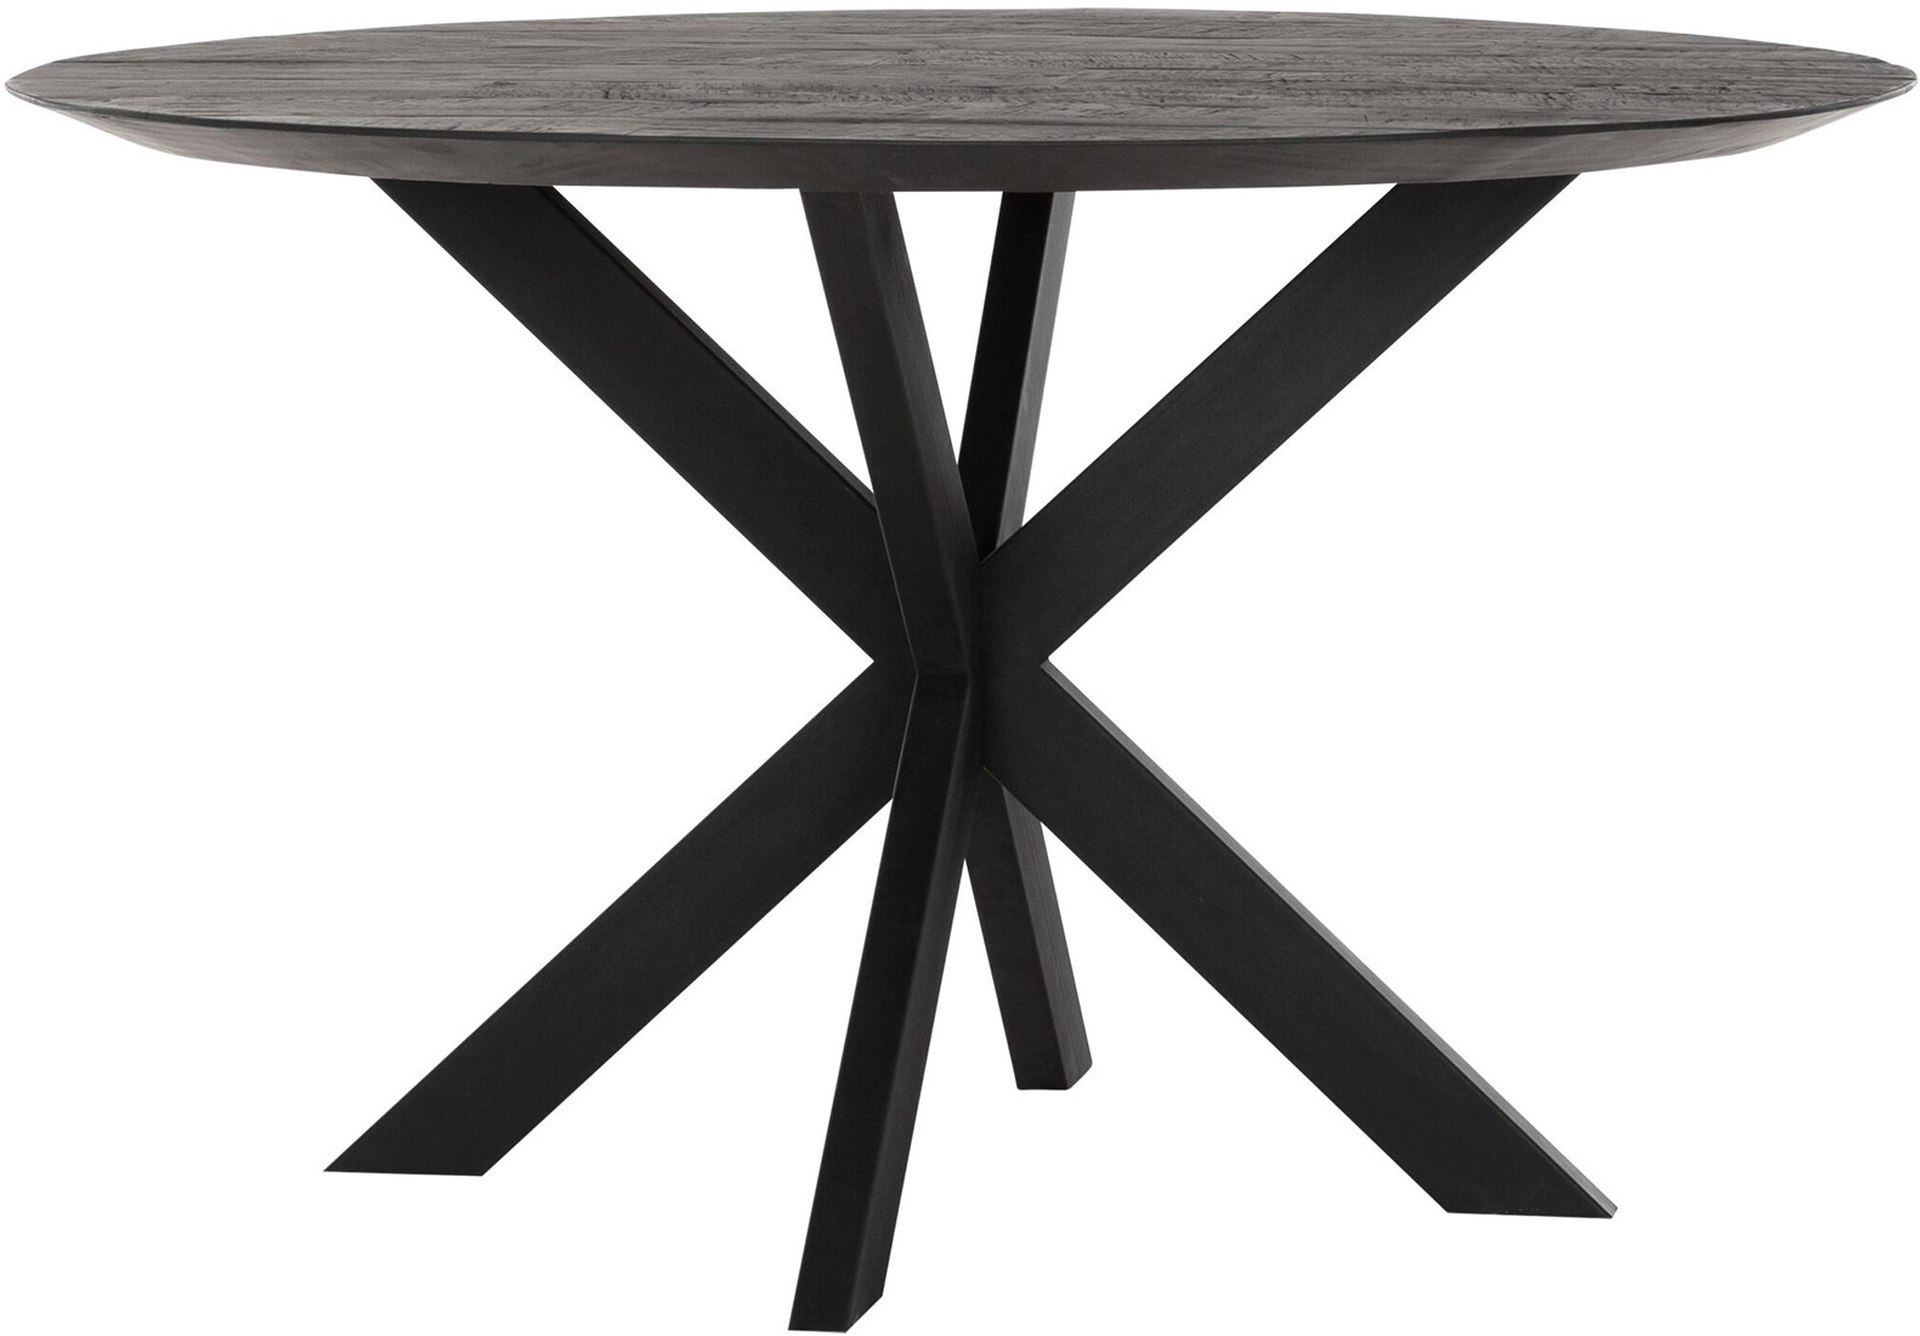 Der Esstisch Shape überzeugt mit seinem modernem aber auch massivem Design. Gefertigt wurde der Tisch aus recyceltem Teakholz, welches einen schwarzen Farbton besitzt. Das Gestell ist aus Metall und ist Schwarz. Der Tisch hat einen Durchmesser von 130 cm.